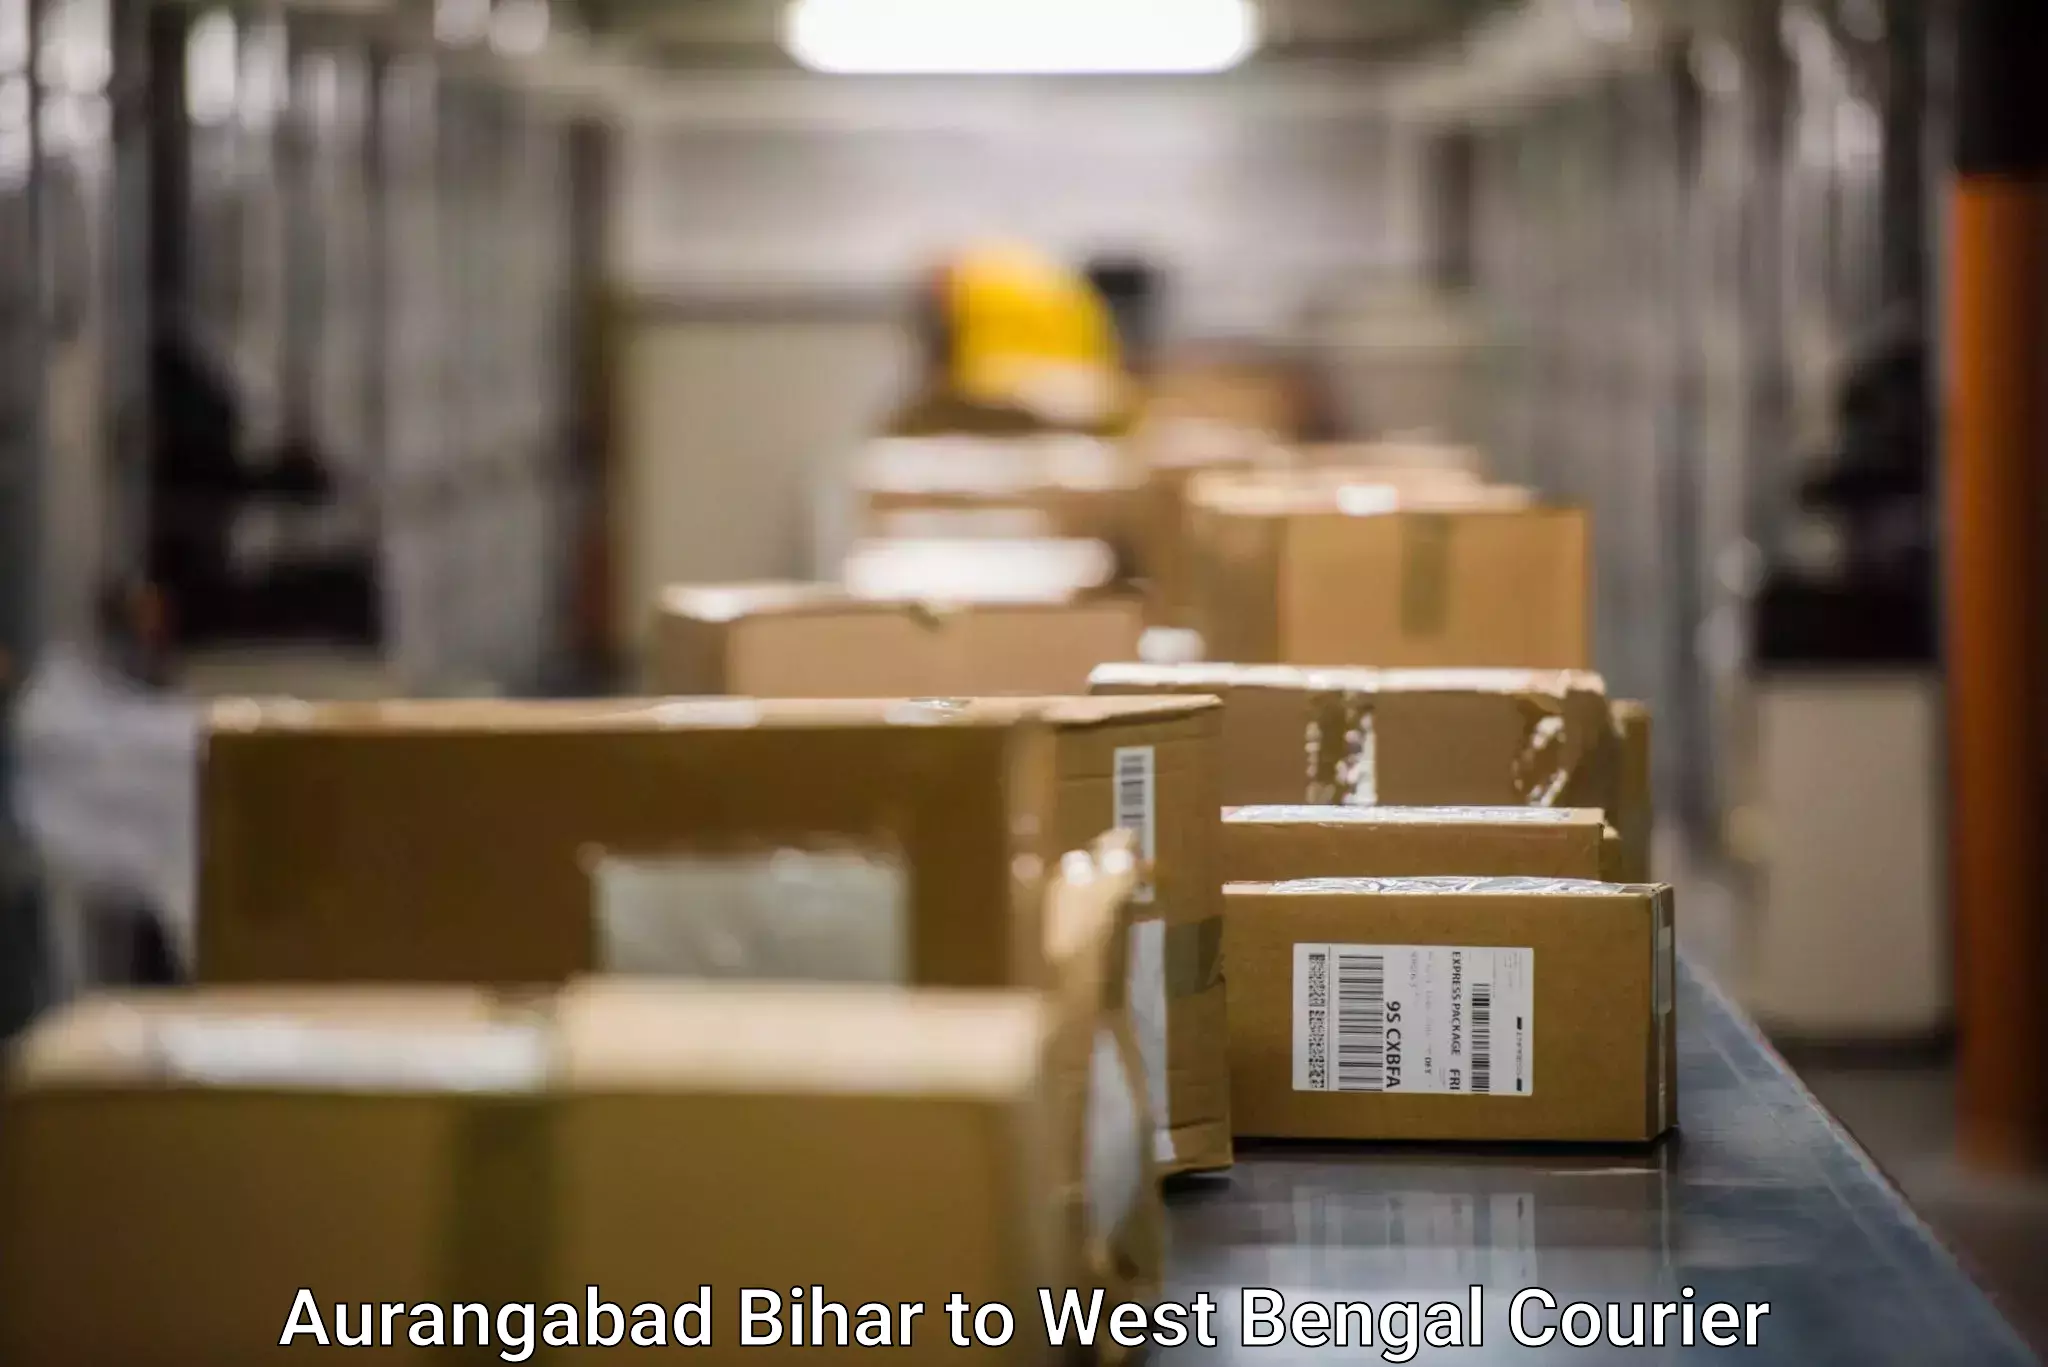 Door-to-door freight service Aurangabad Bihar to Shantiniketan